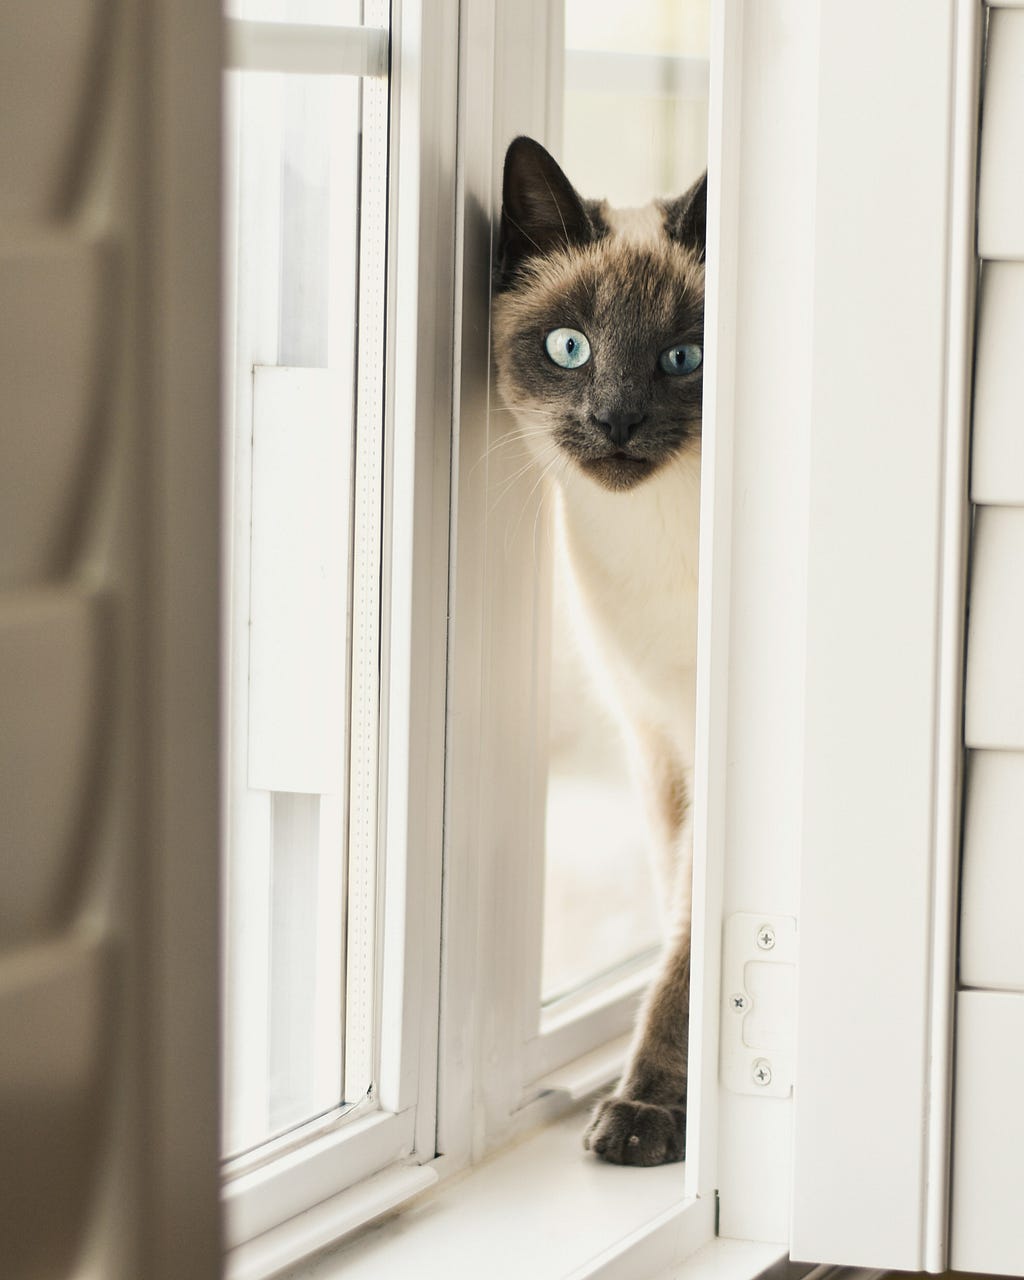 A grey and white cat peeking through a half closed door, avoiding company.